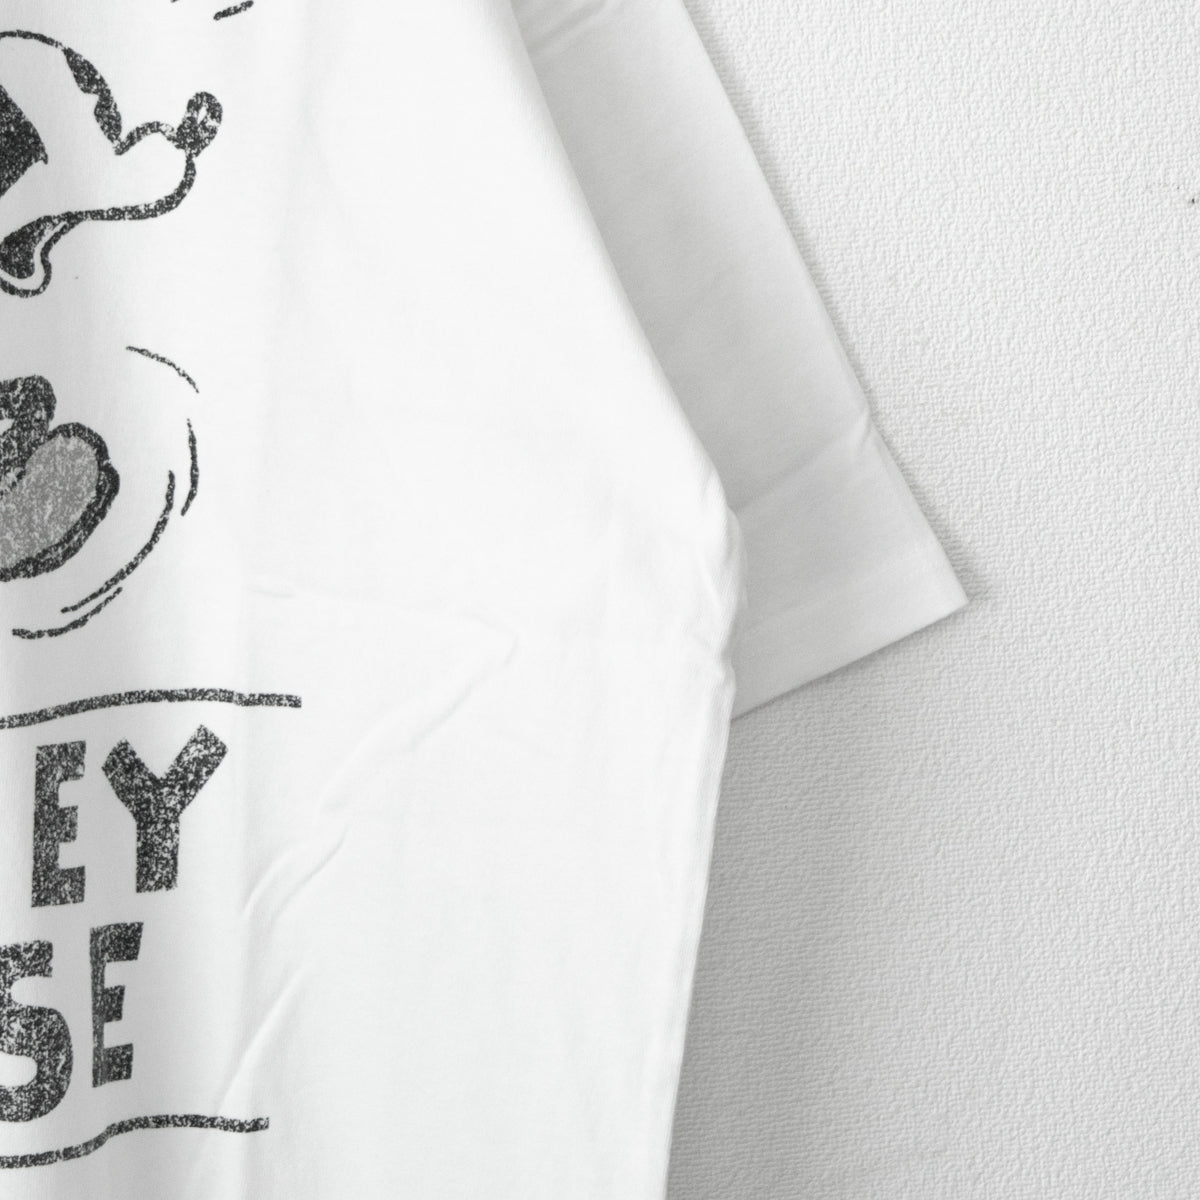 Disney Mickey Ringer T-shirt WHITE